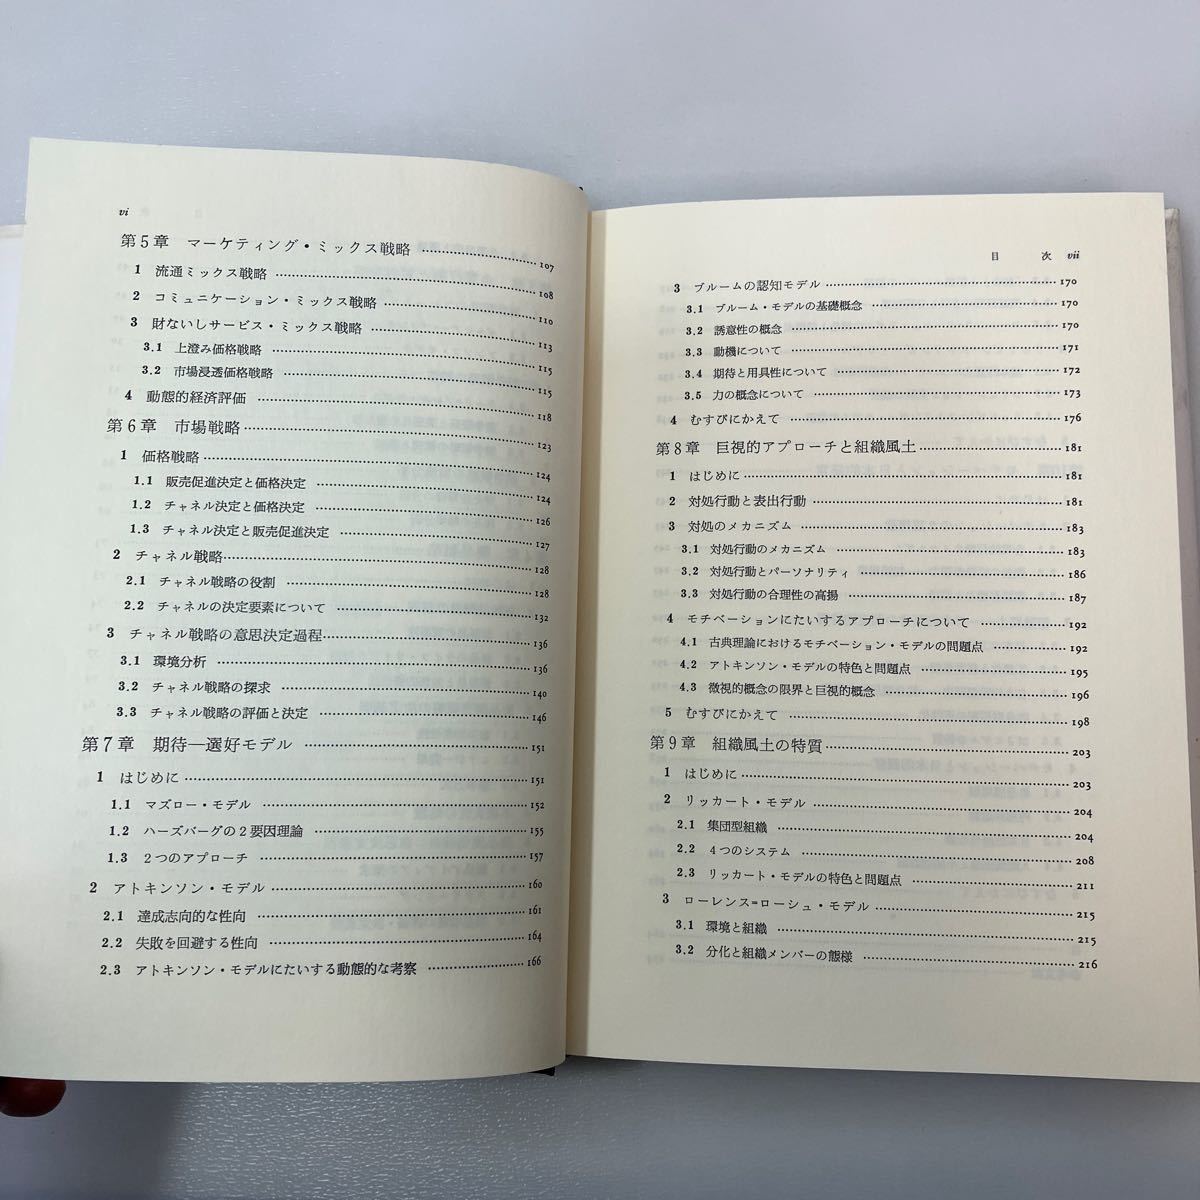 zaa534♪経営行動論 　井尻昭夫 (著) 昭和堂（京都）（1988/04発売）